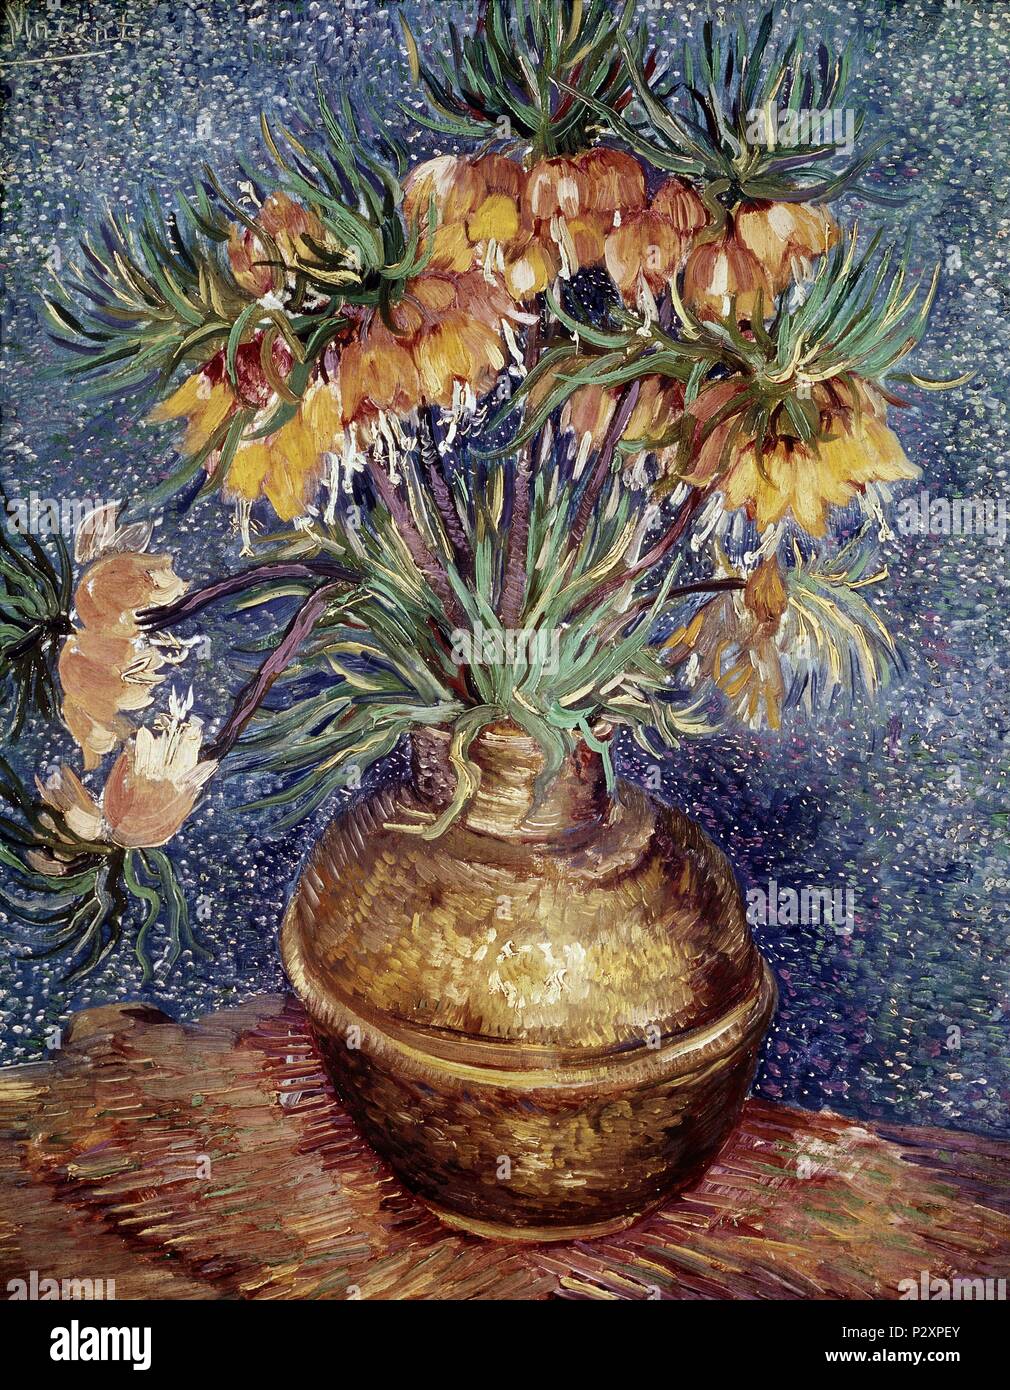 Crown Imperial Fritillaries in einem Kupfer Vase - 1887 - 73,5 x 60,5 cm, Öl auf Leinwand. Autor: Vincent van Gogh (1853-1890). Lage: Musee D'Orsay, Frankreich. Auch als: CORONA IMPERIAL EN UN JARRON DE COBRE bekannt. Stockfoto